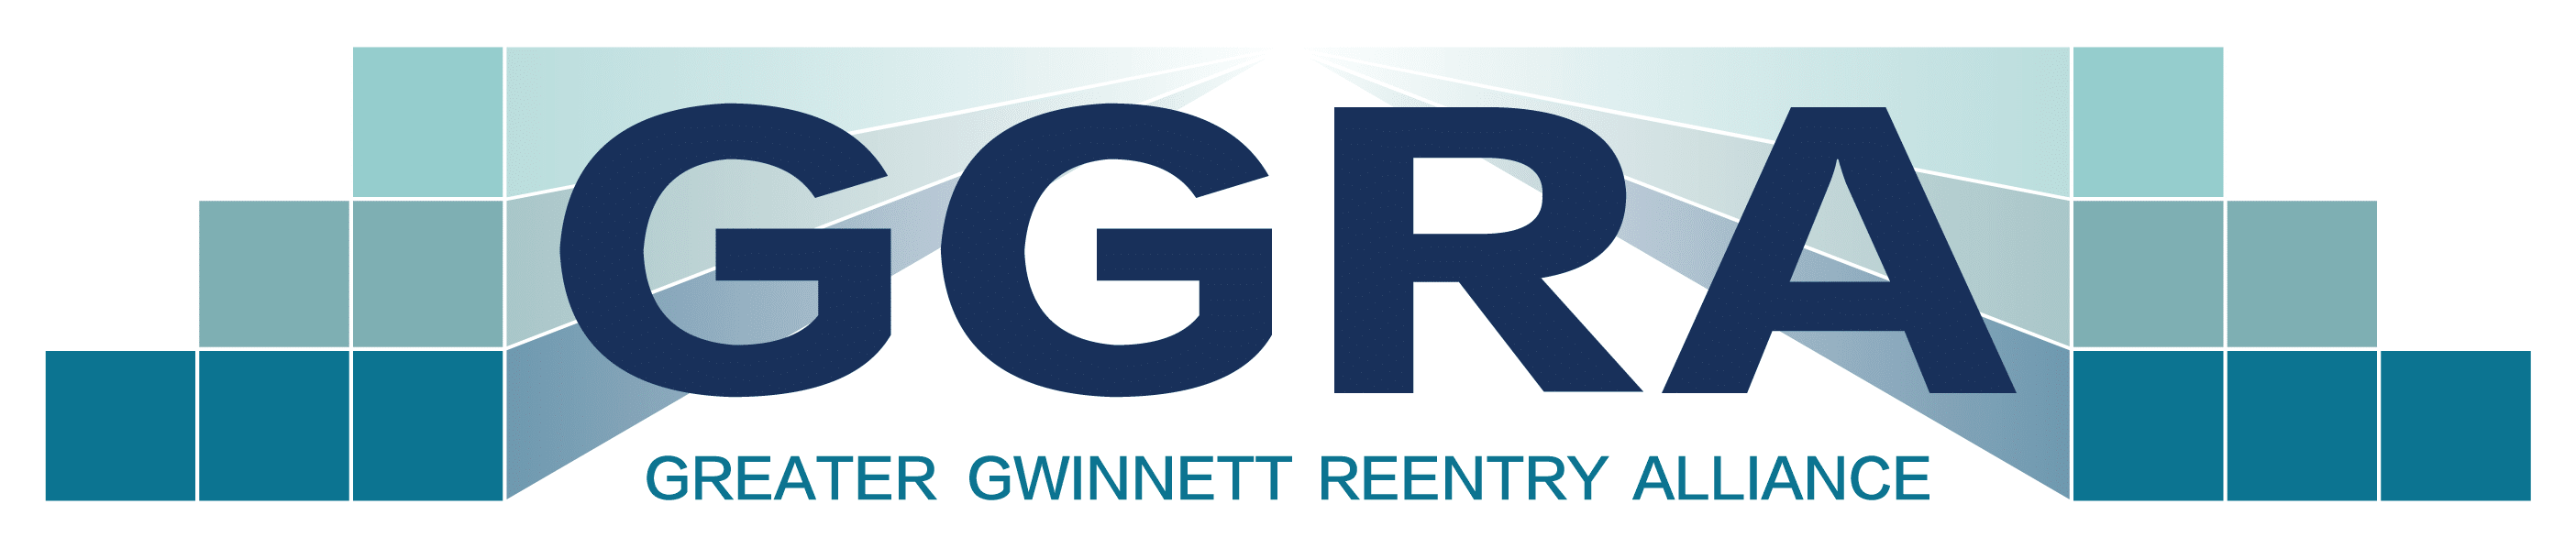 Greater Gwinnett Reentry Alliance